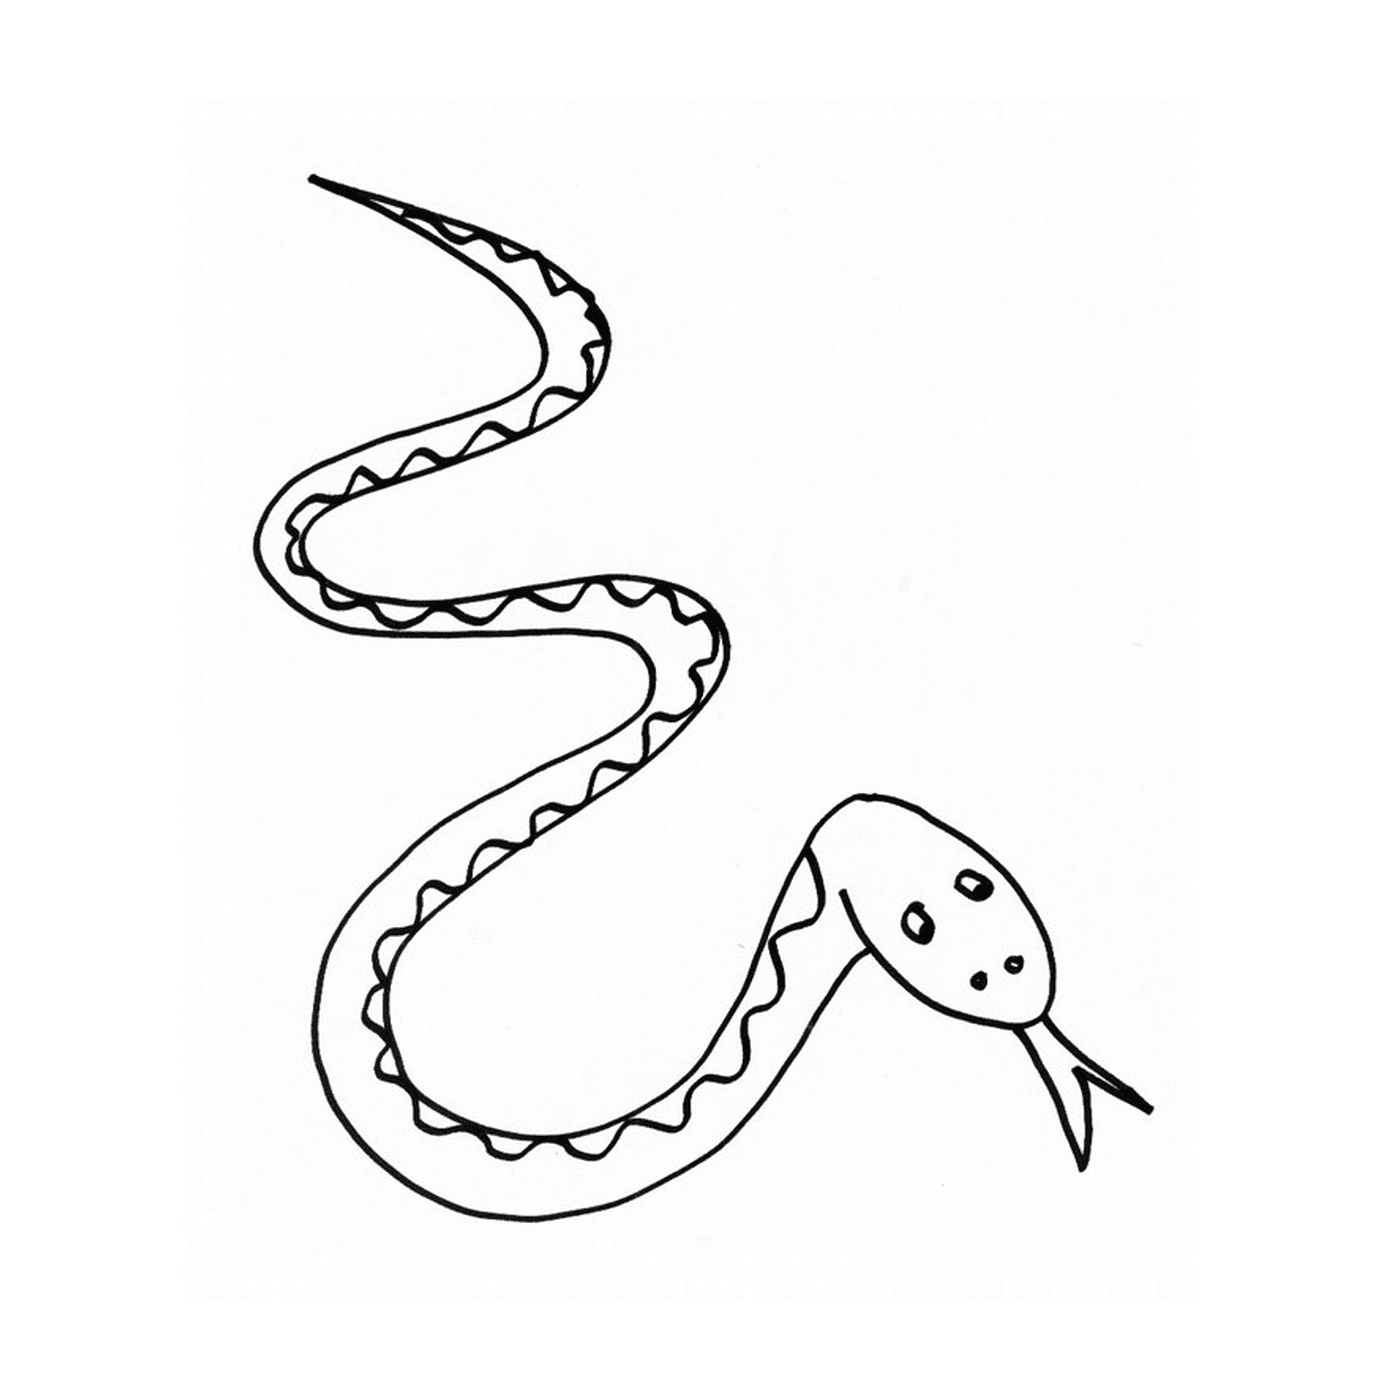  A drawn snake 